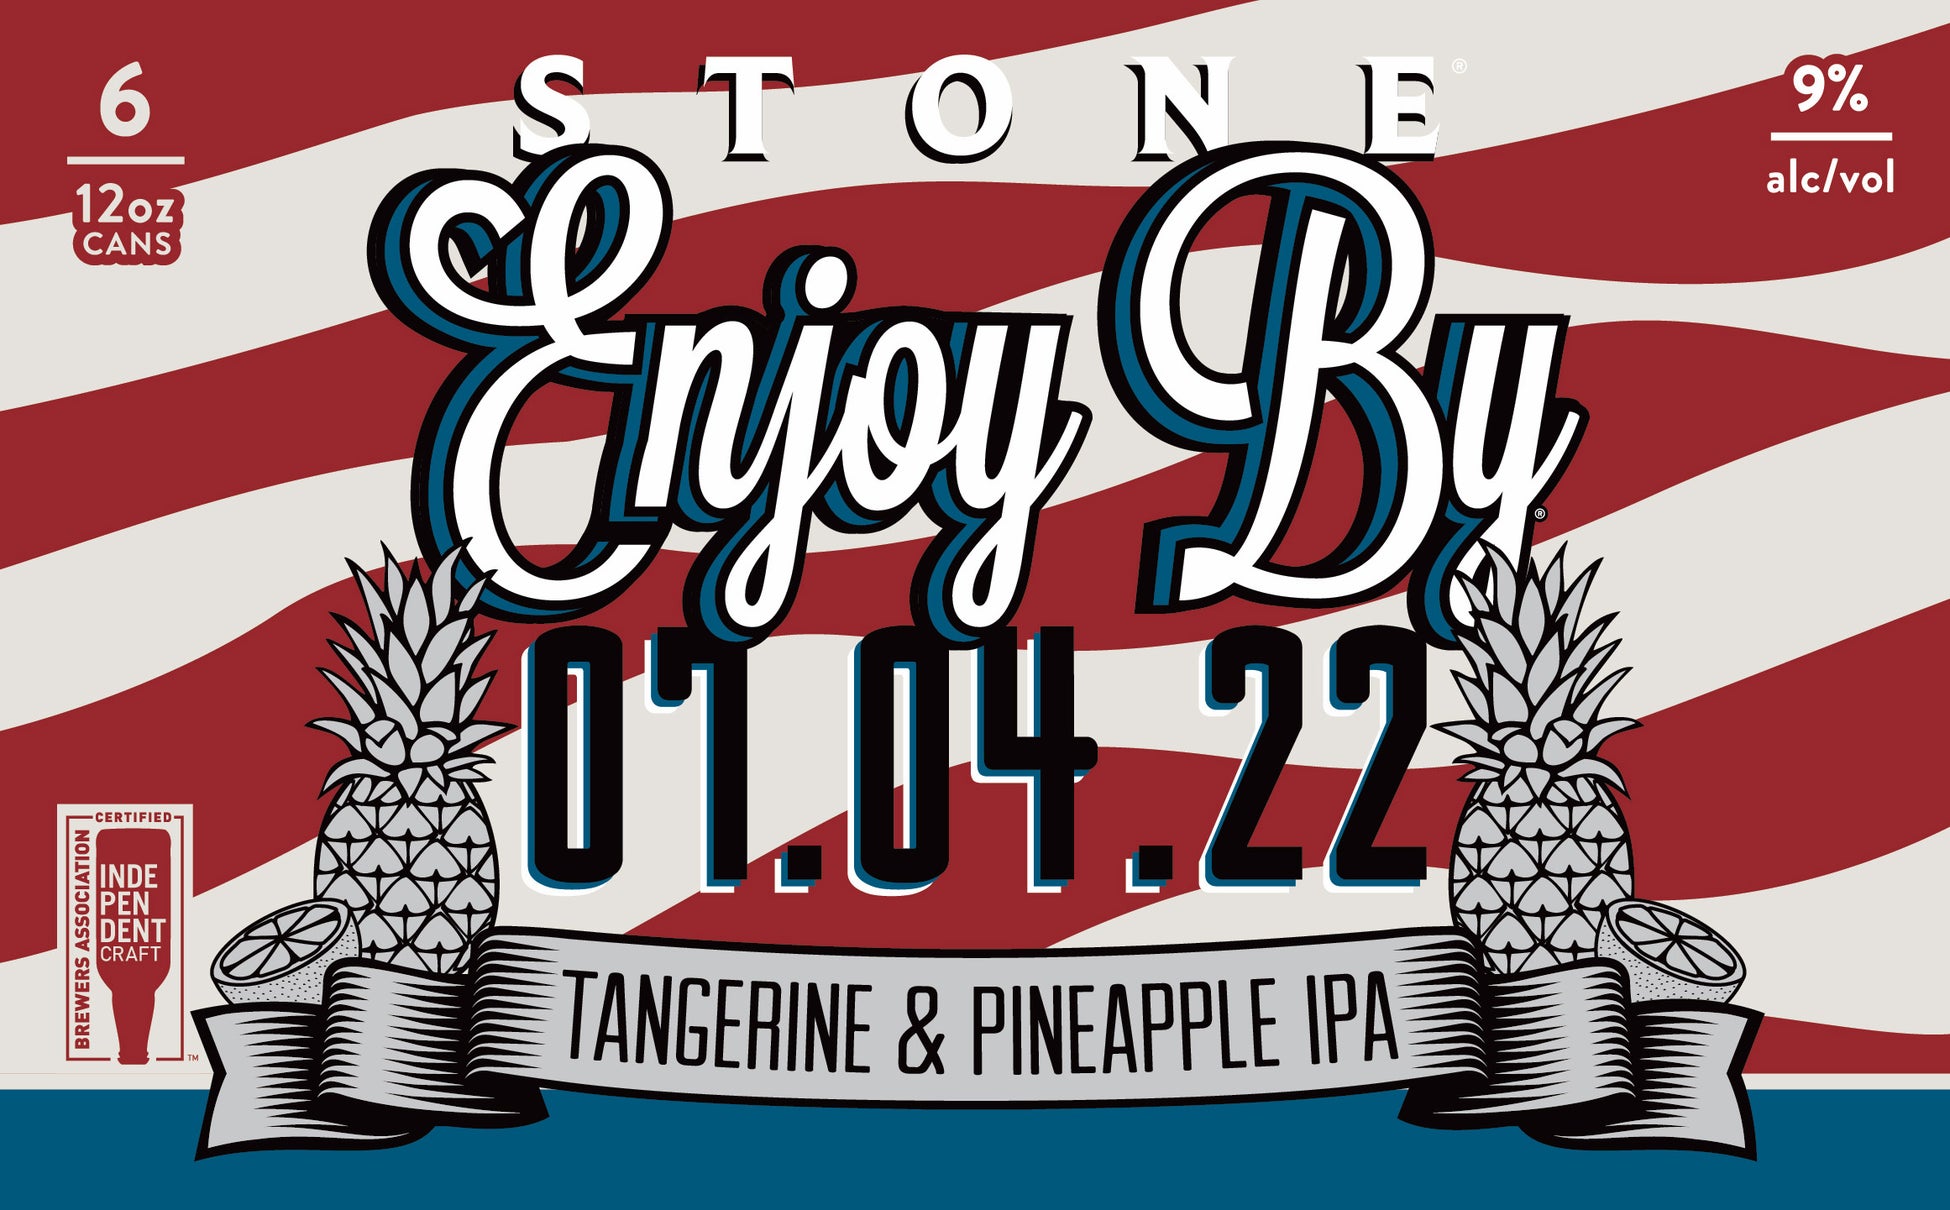 「新鮮さの限界」に挑戦したクラフトビールの超人気シリーズ『Stone Enjoy By 07.04.22 IPA』 を6月9日(木)より全国発売のサブ画像1